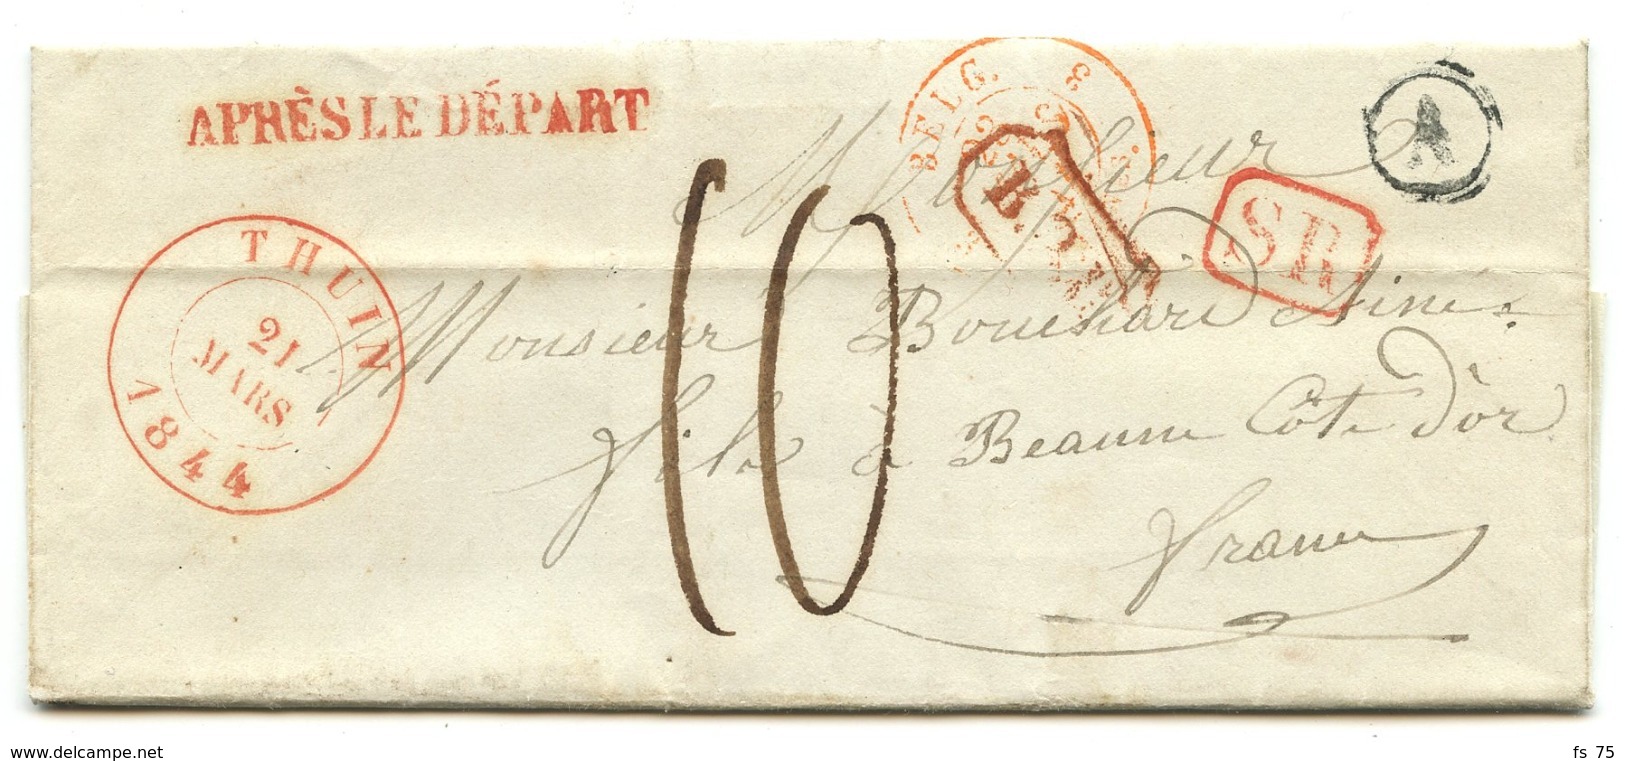 BELGIQUE - CAD THUIN + SR + BOITE A SUR LETTRE AVEC TEXTE DE GOZE POUR LA FRANCE, 1844 - 1830-1849 (Belgio Indipendente)